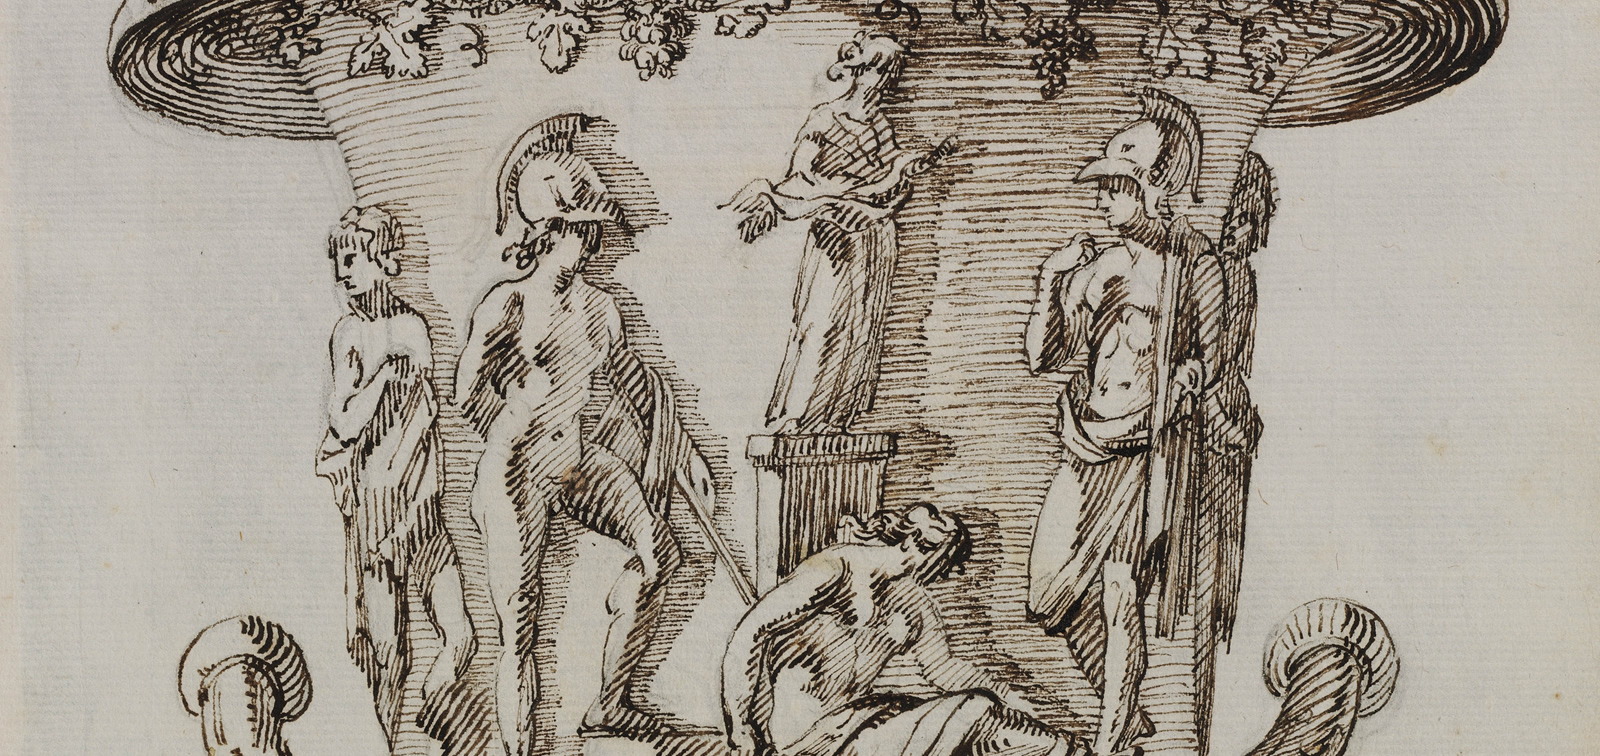 Roma en el bolsillo. Cuadernos de dibujo y aprendizaje artístico en el siglo XVIII